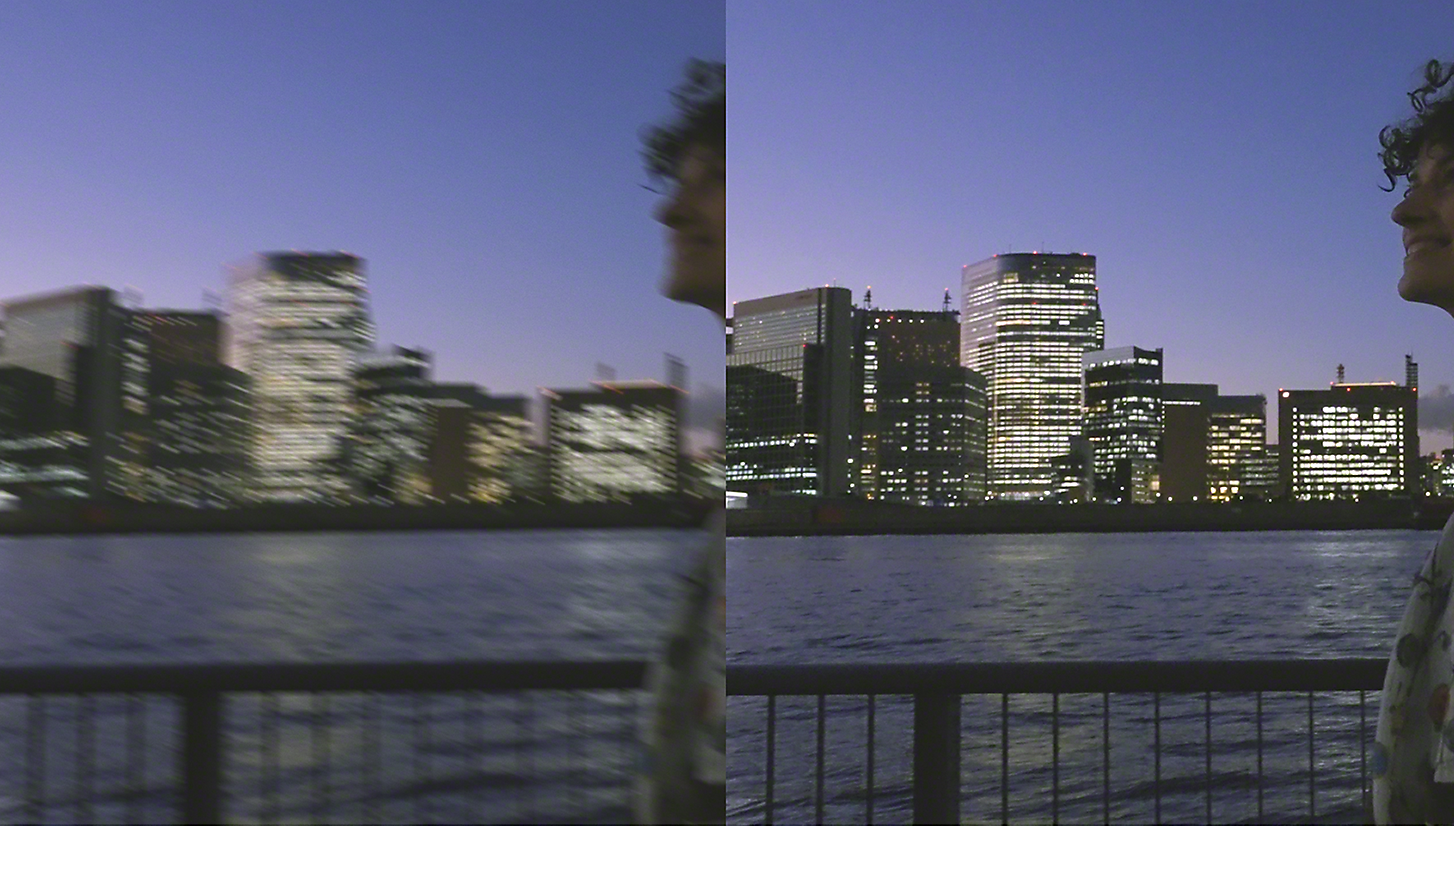 Kettős kép egy éjszakai városképről – a bal kép elmosódott, a jobb tiszta és éles